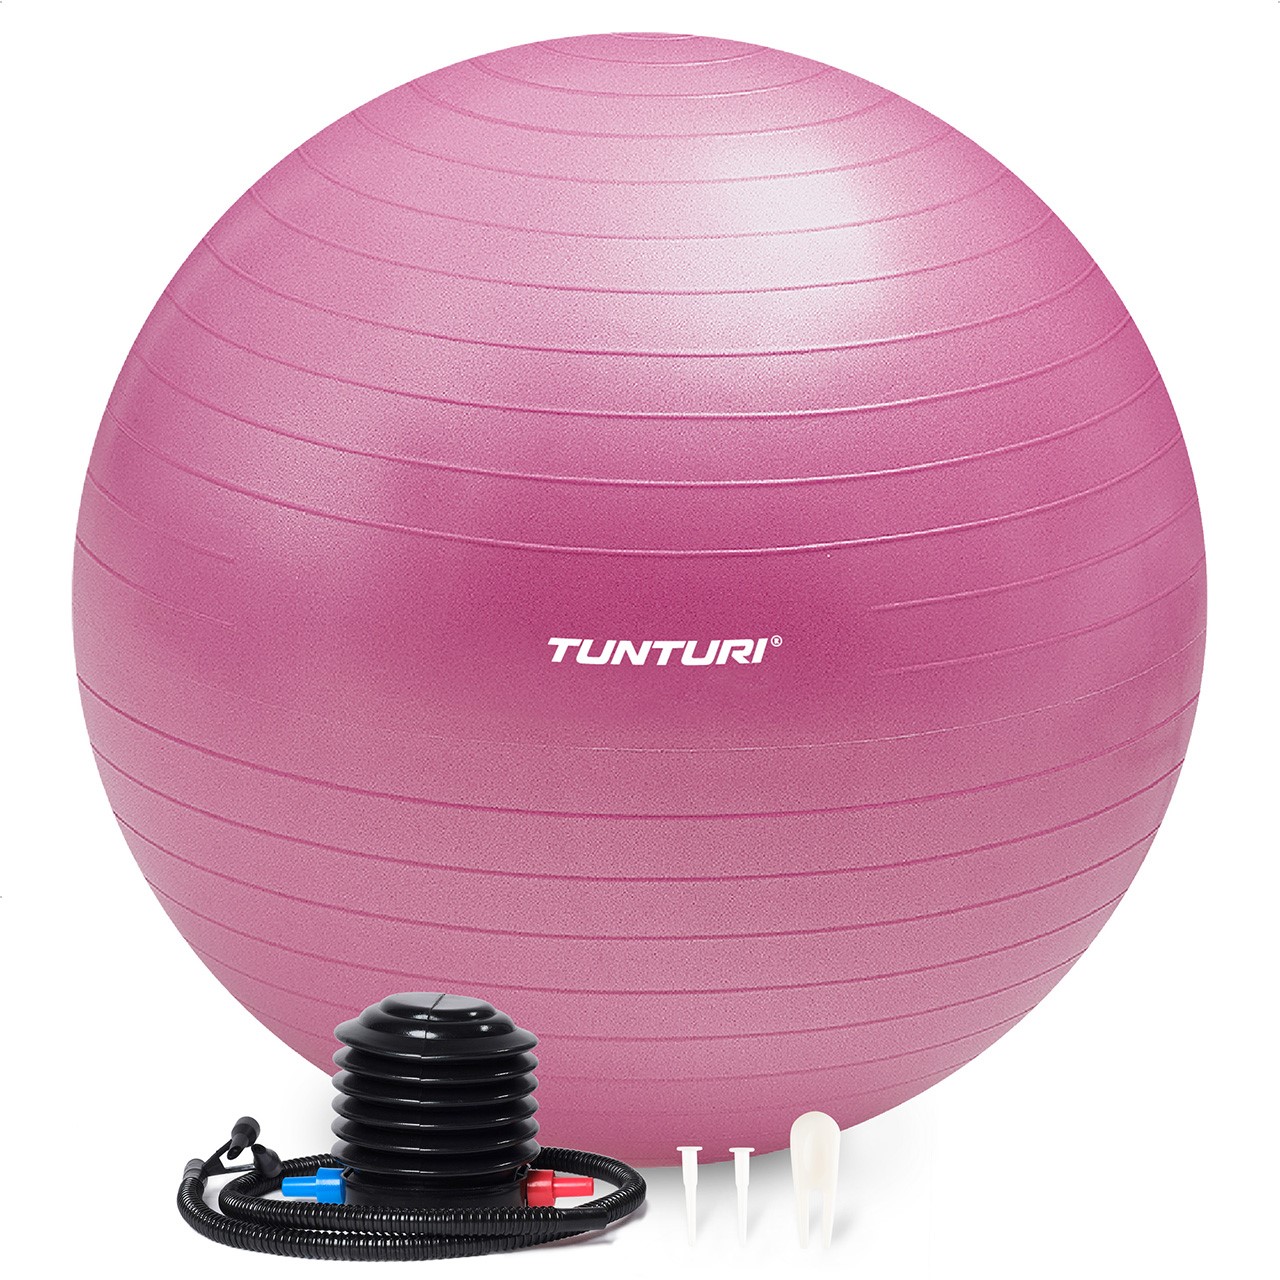 Tunturi Gym Ball - Anti Burst ABS 75 cm purple